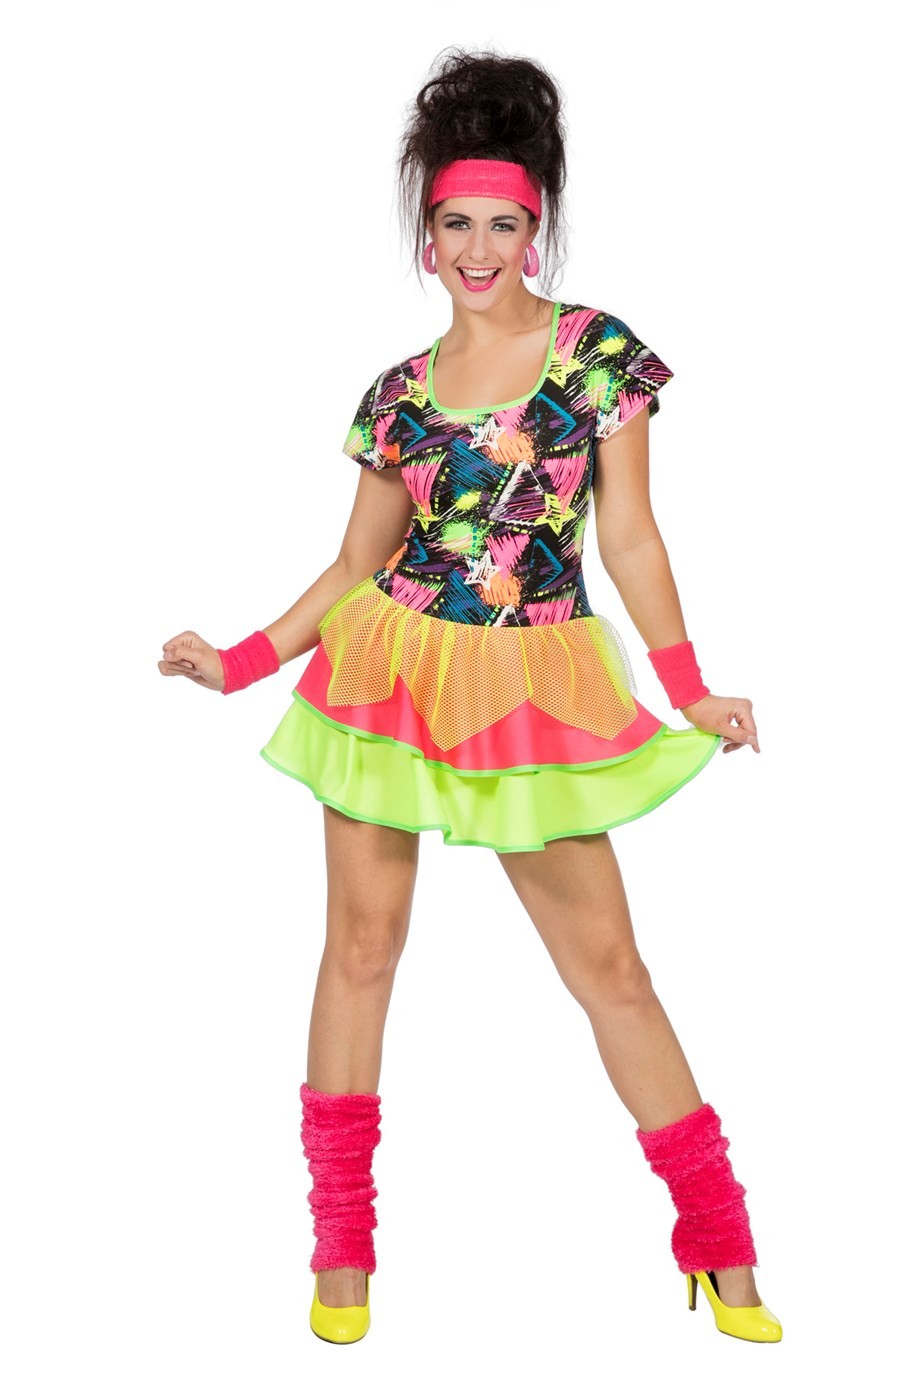 Kip Tegenstrijdigheid Heup Jaren 80 jurk bestellen ? | Jokershop.be - Fluo neon kleding